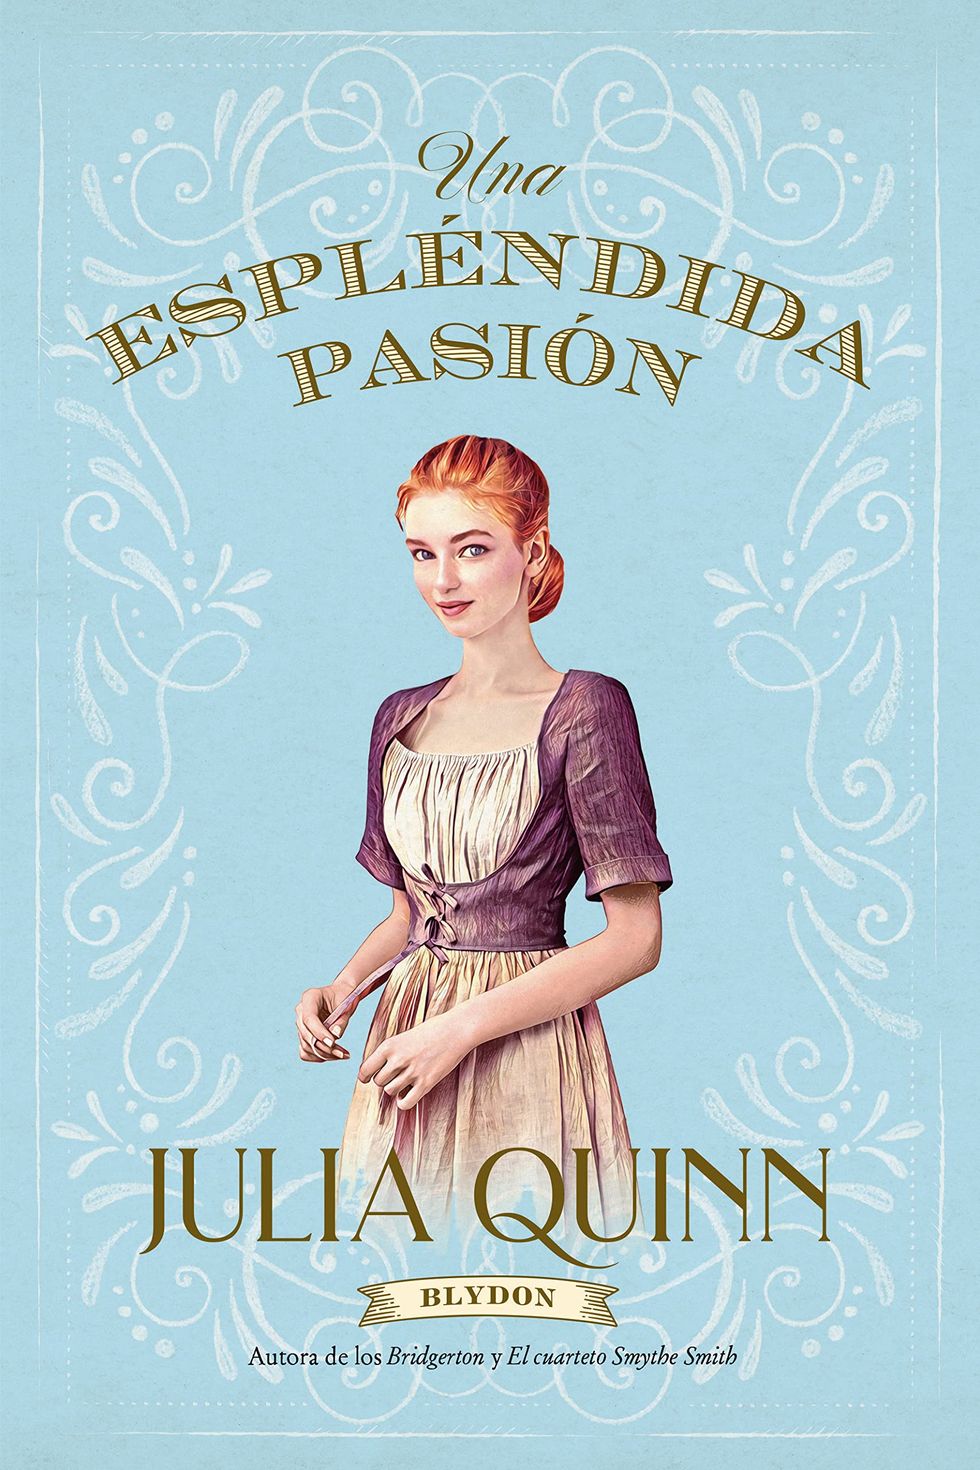 Espléndida pasión de Julia Quinn (Blydon 1) (Titania época)